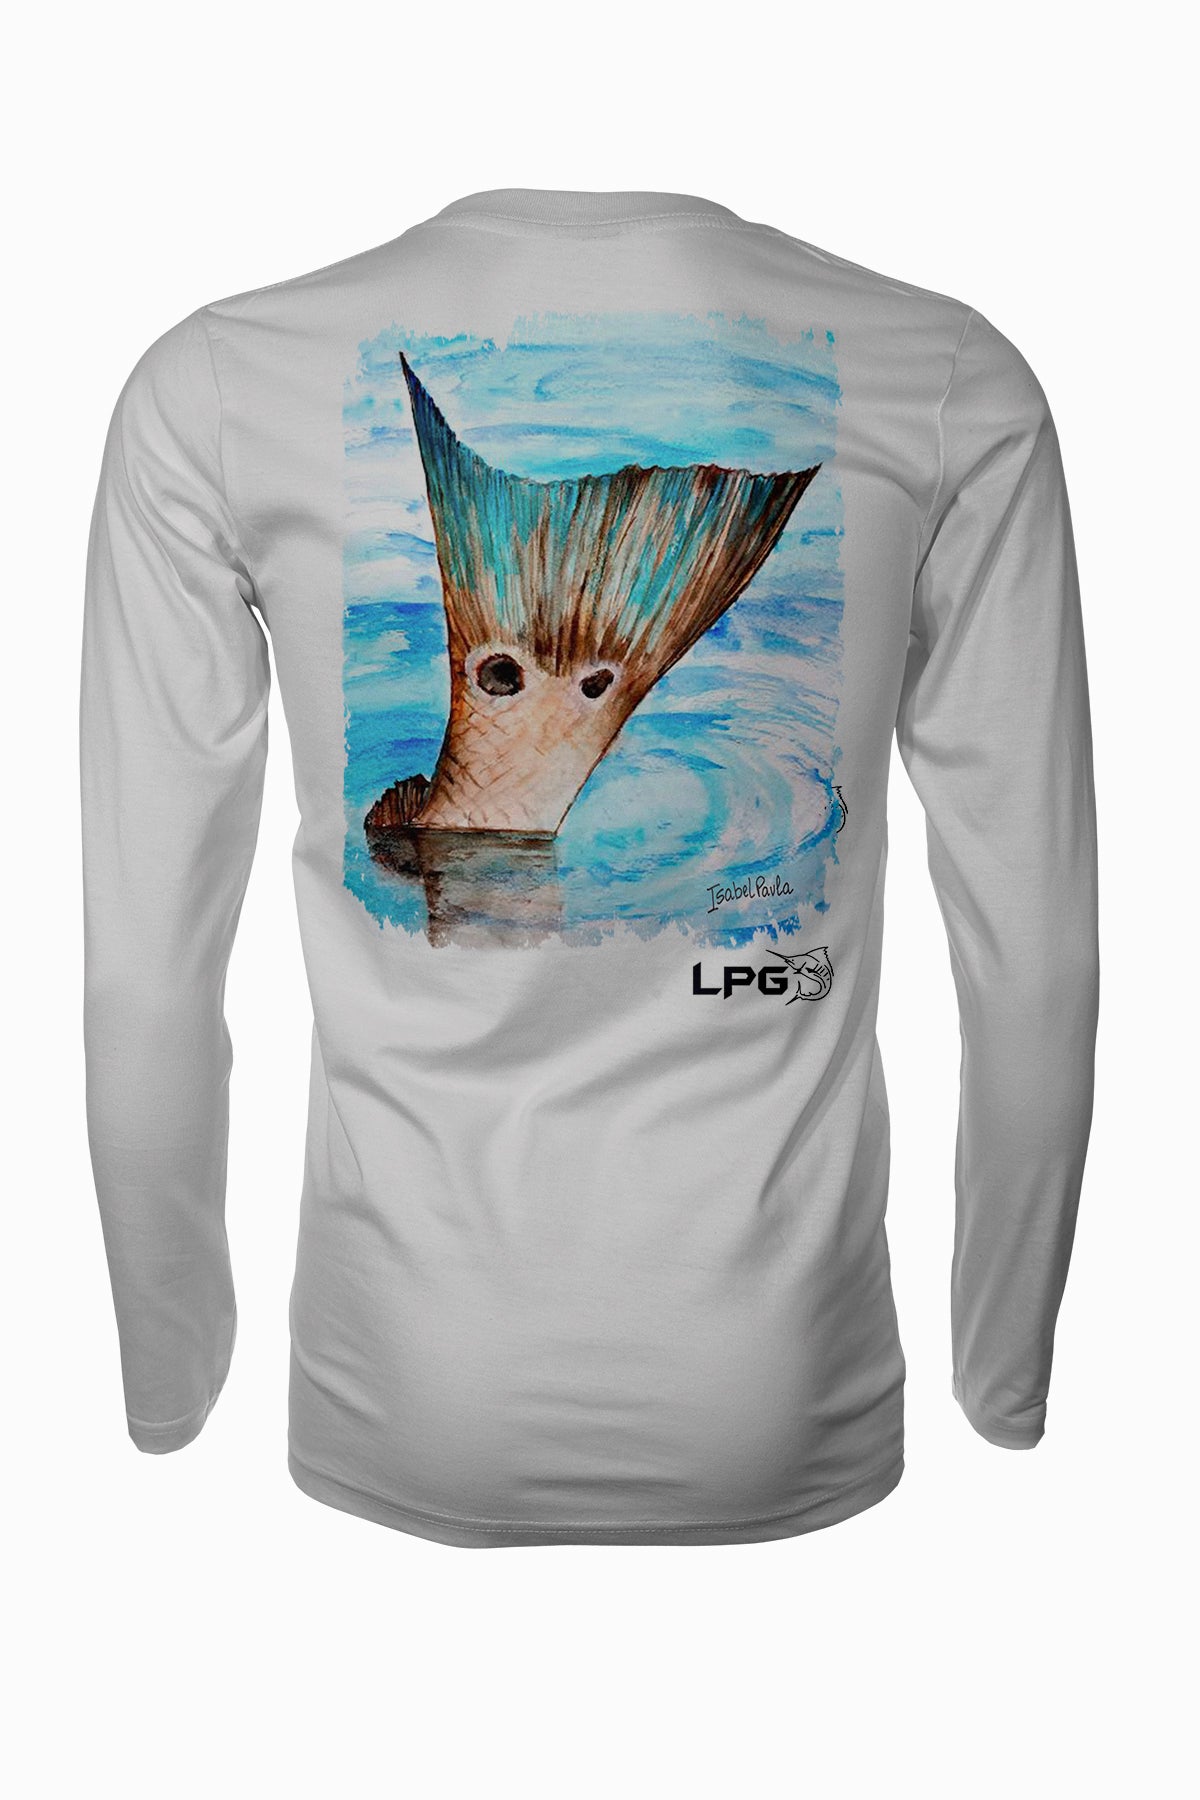 Redfish Tail Florida Style Long Sleeve Fishing Shirt for Unisex